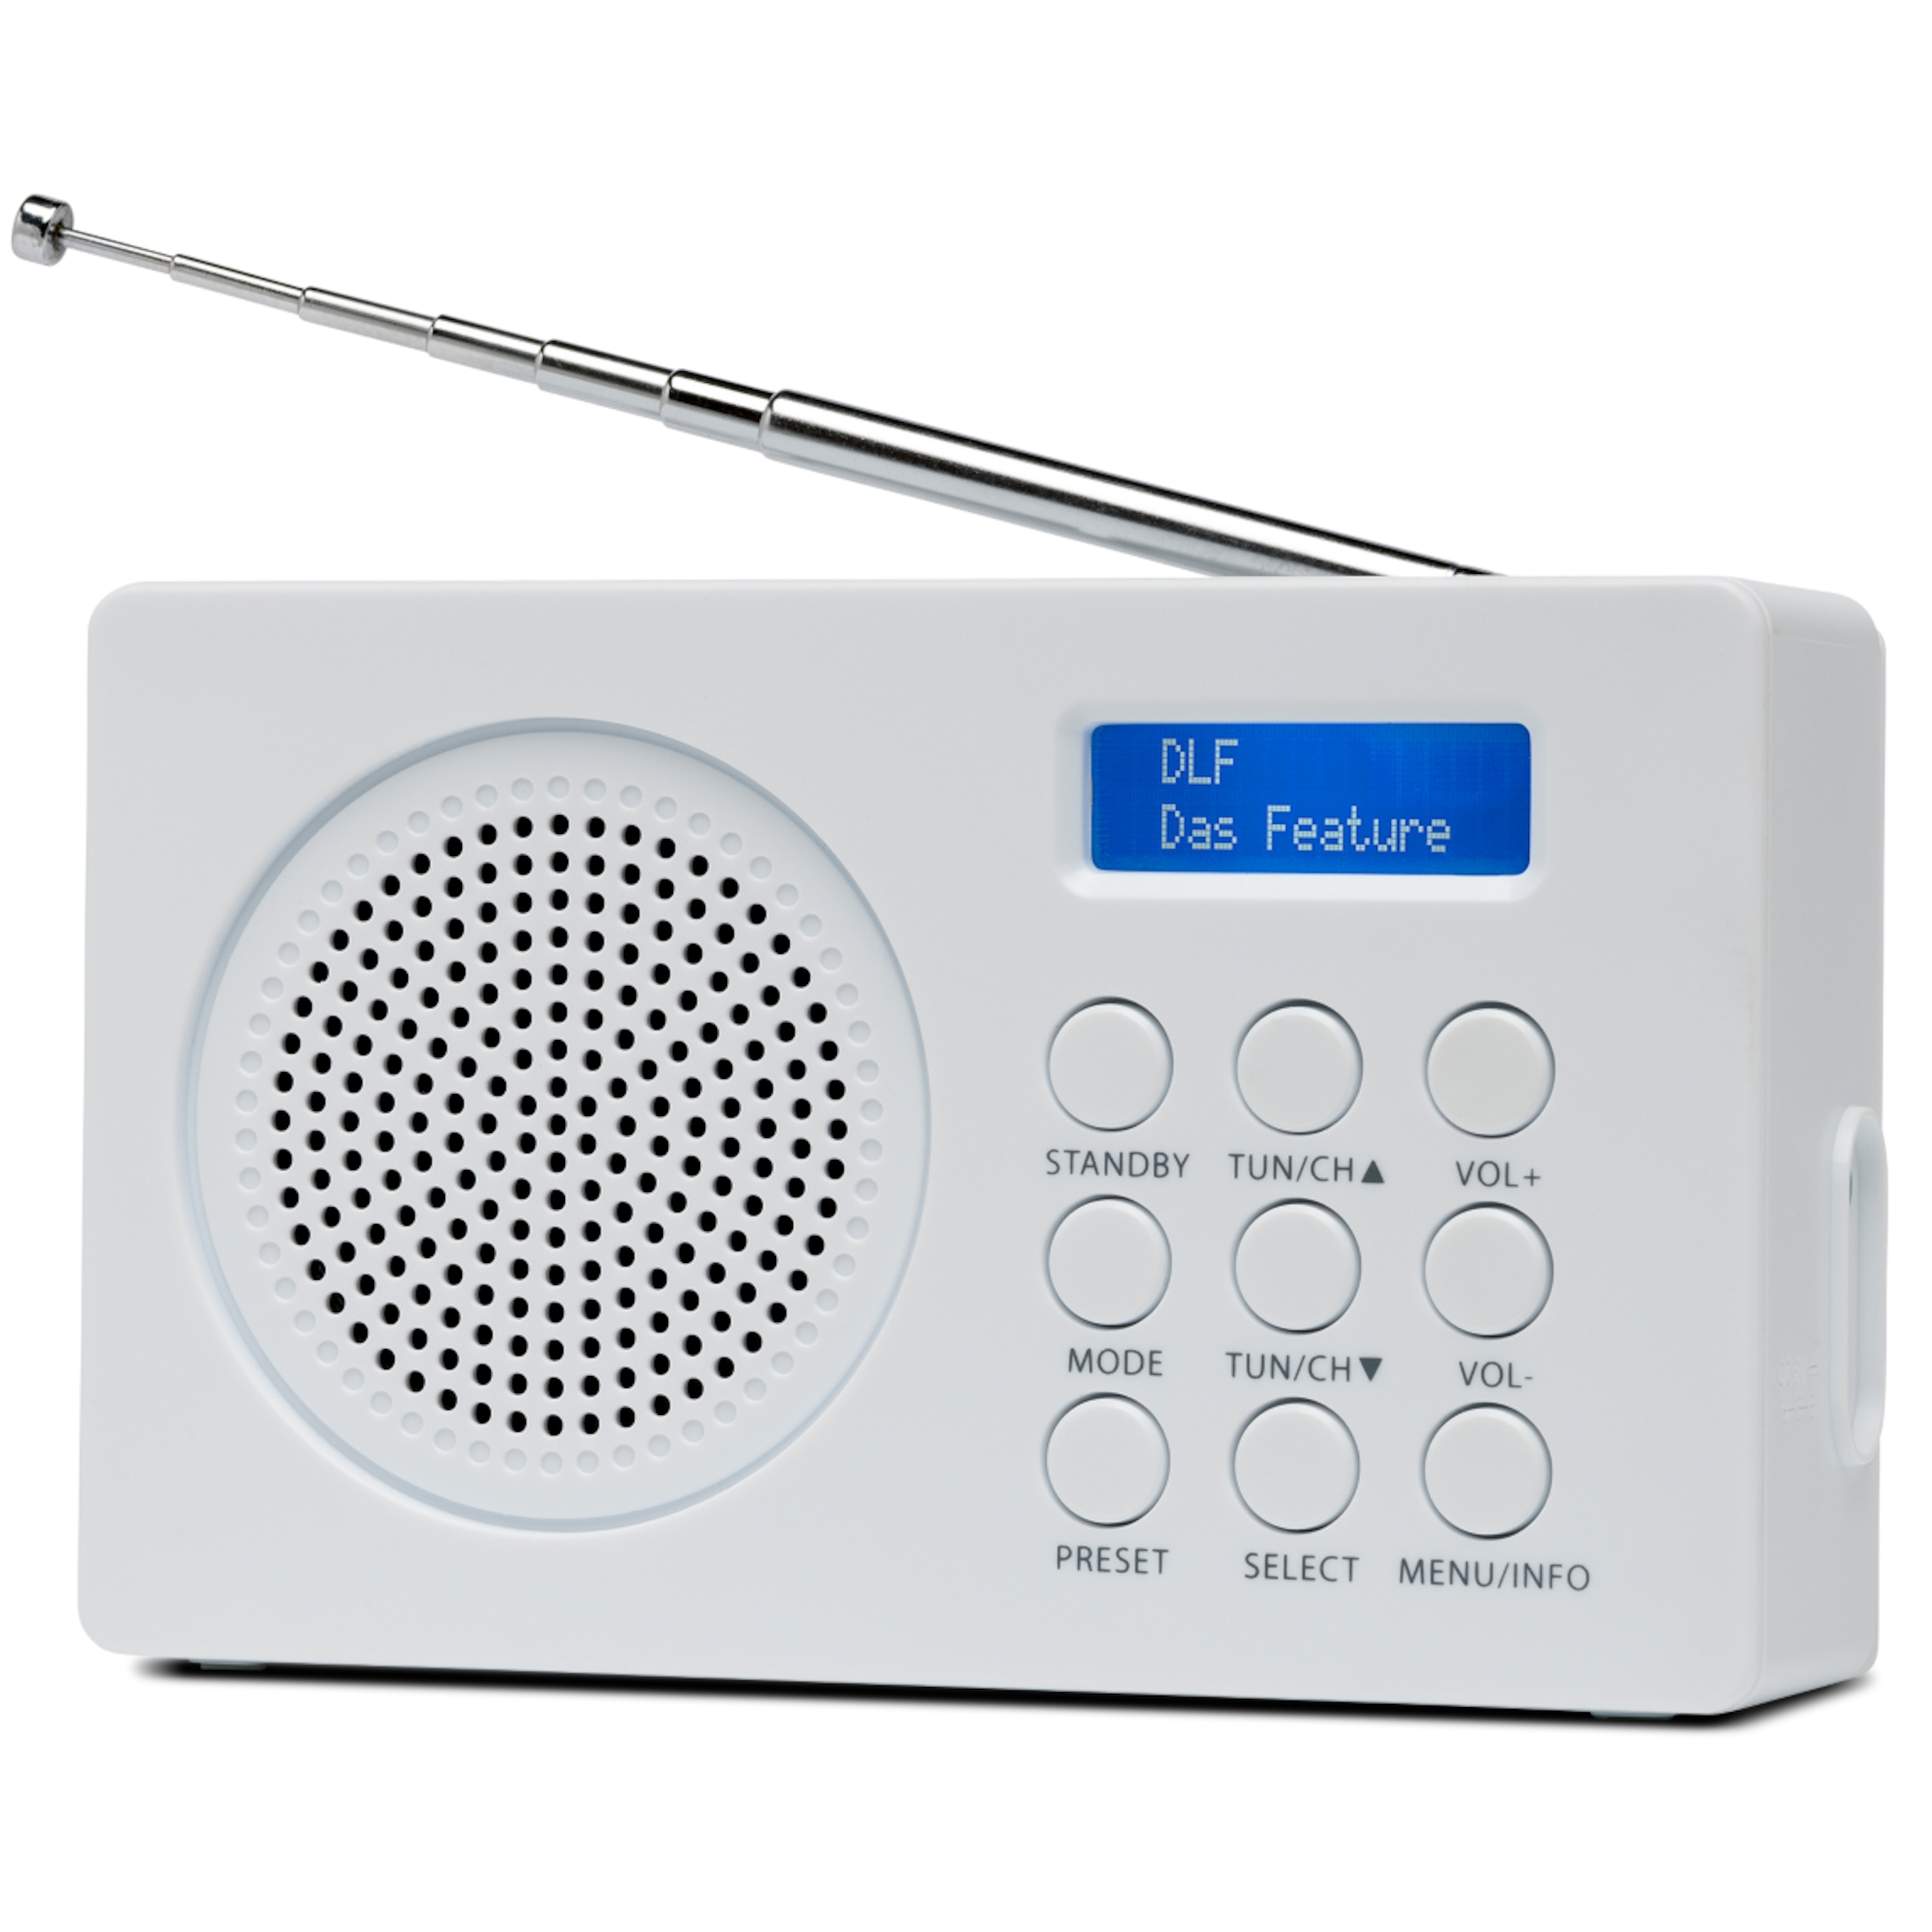 MEDION® LIFE® E66320 DAB+ Radio, Digitale Radiosender in brillanter Tonqualität, Netz- oder Batteriebetrieb